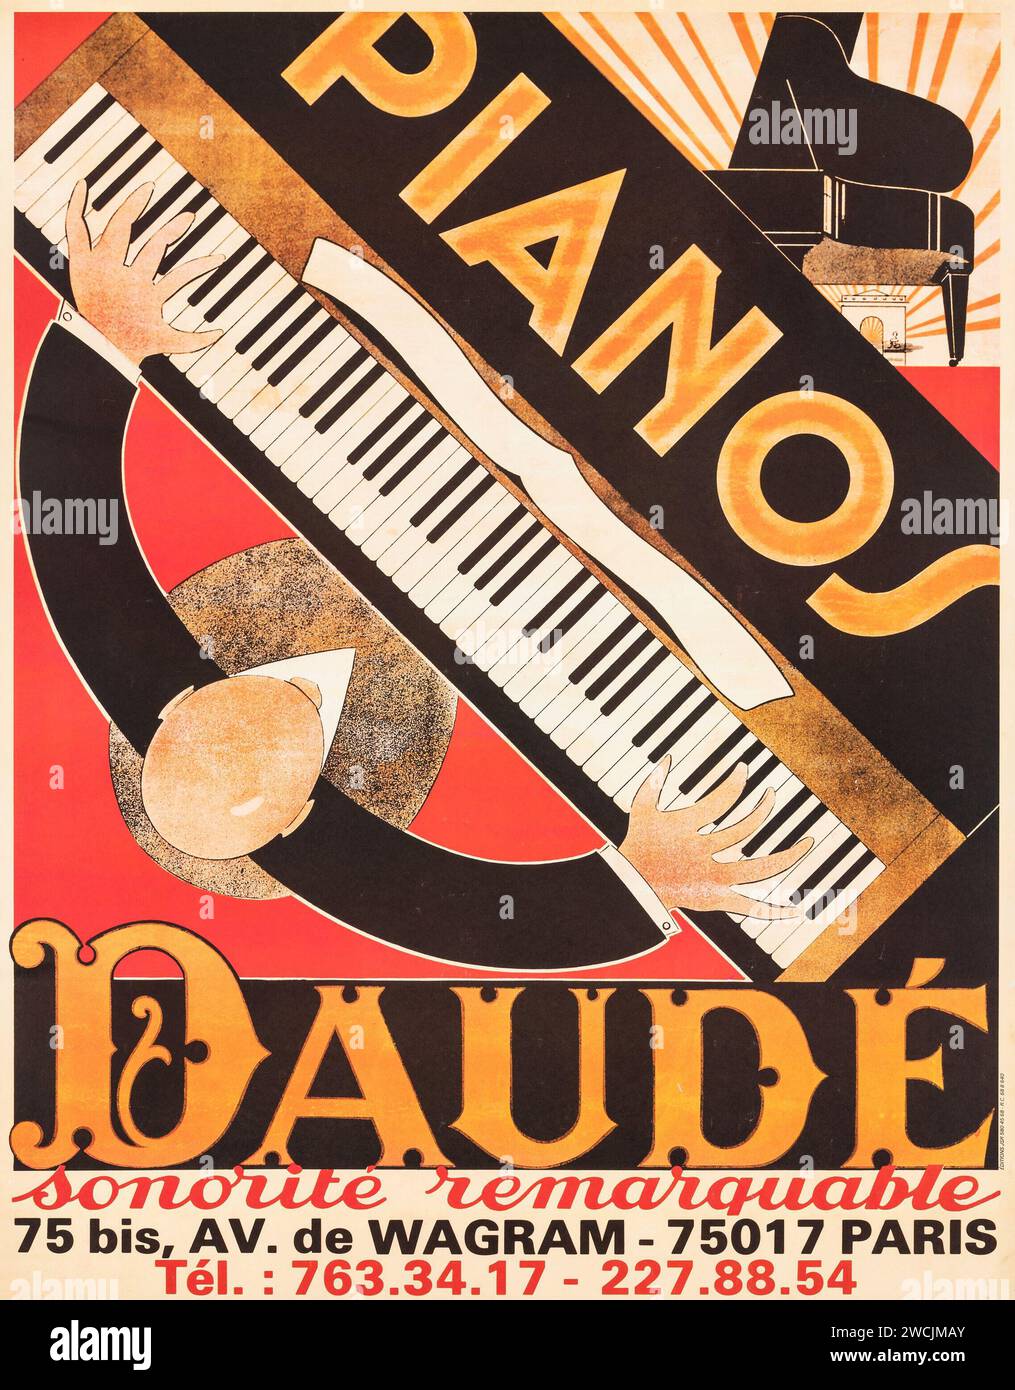 Affiche vintage - pianos Daude. Affiche publicitaire française, c 1930s. Banque D'Images